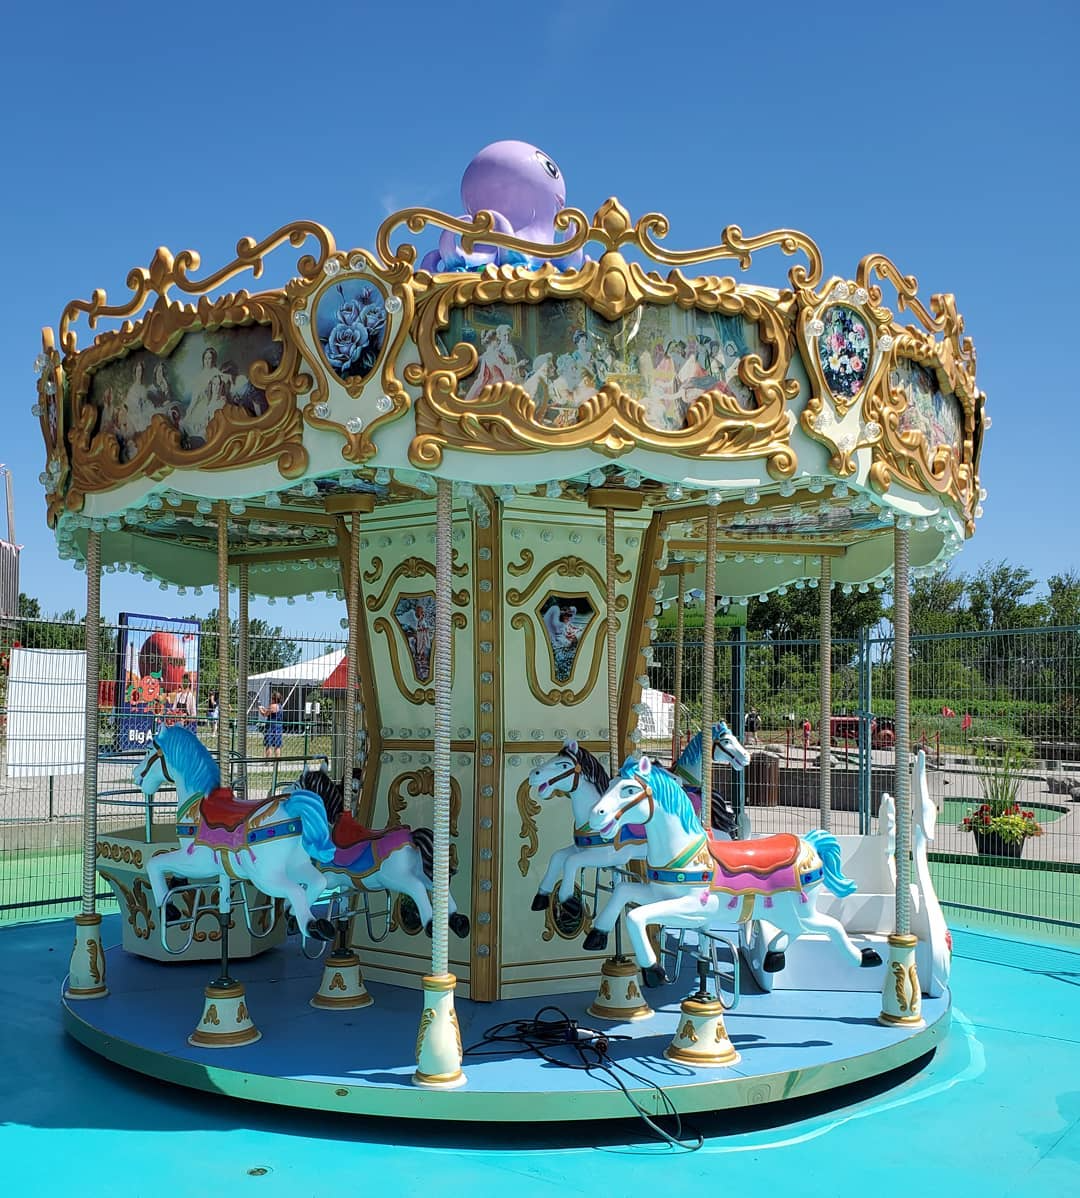 Amusement Park Carousel rides